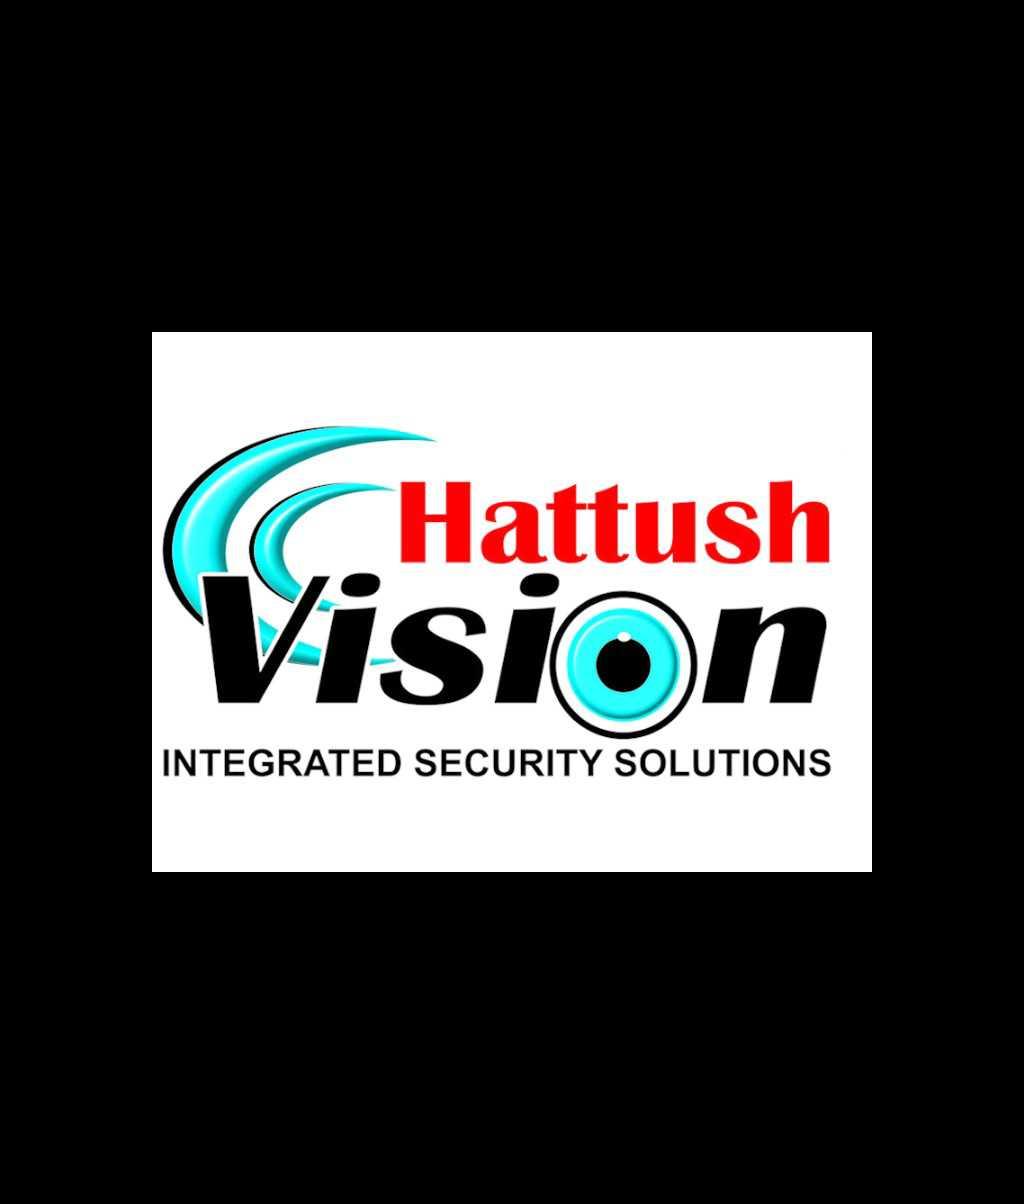 Hattush Vision